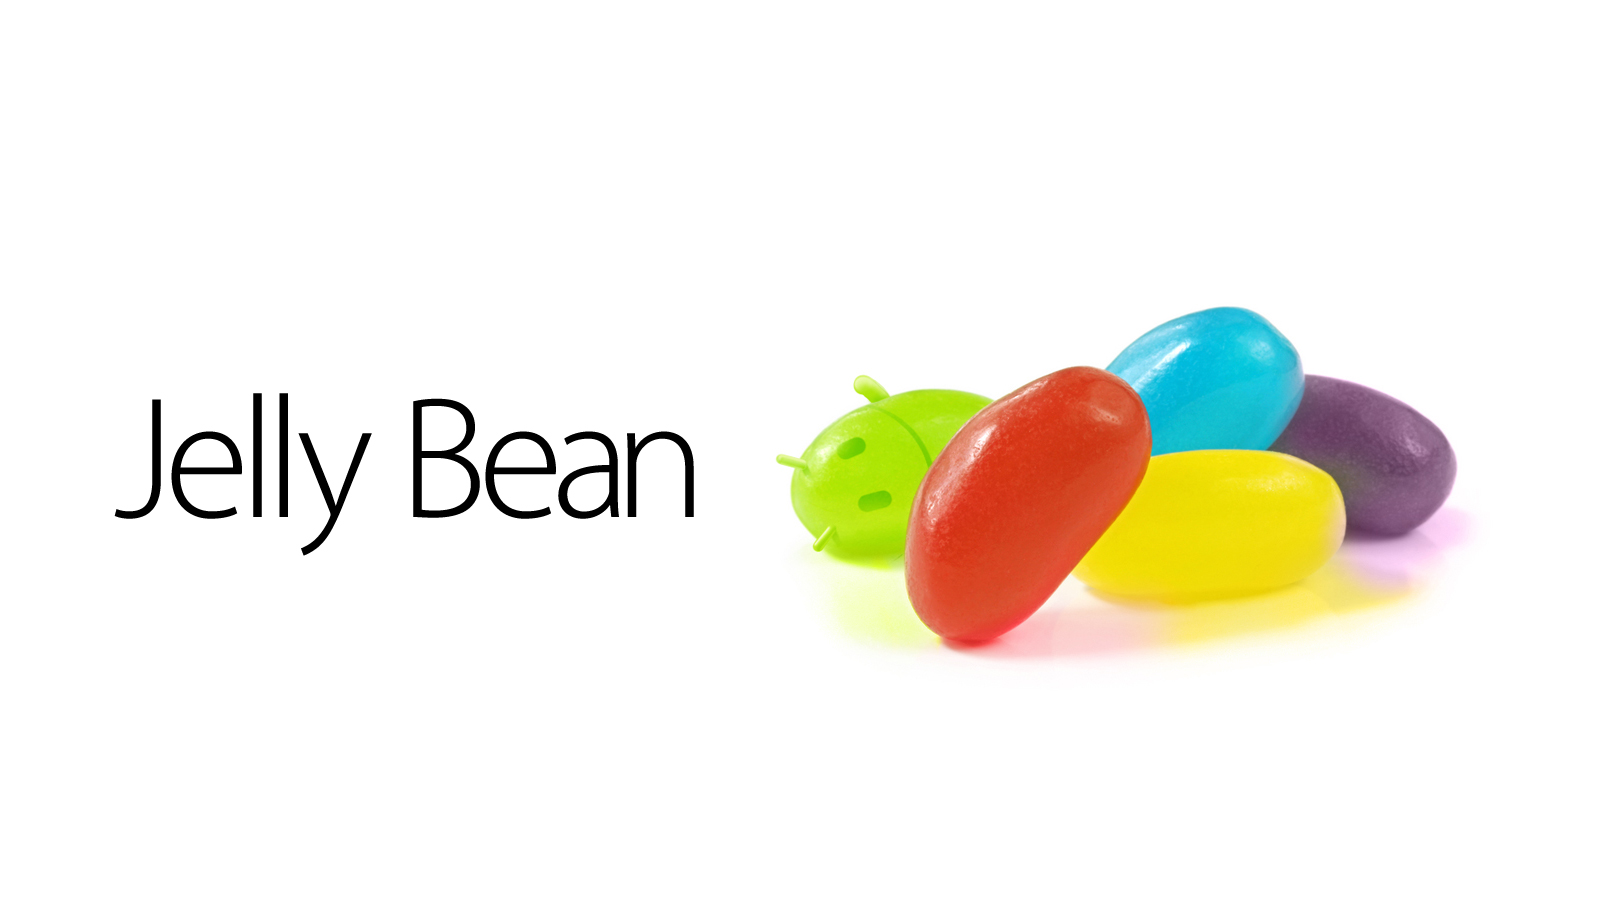 Asus begint uitrol Android 4.1 Jelly Bean-update voor Transformer Prime in Zweden